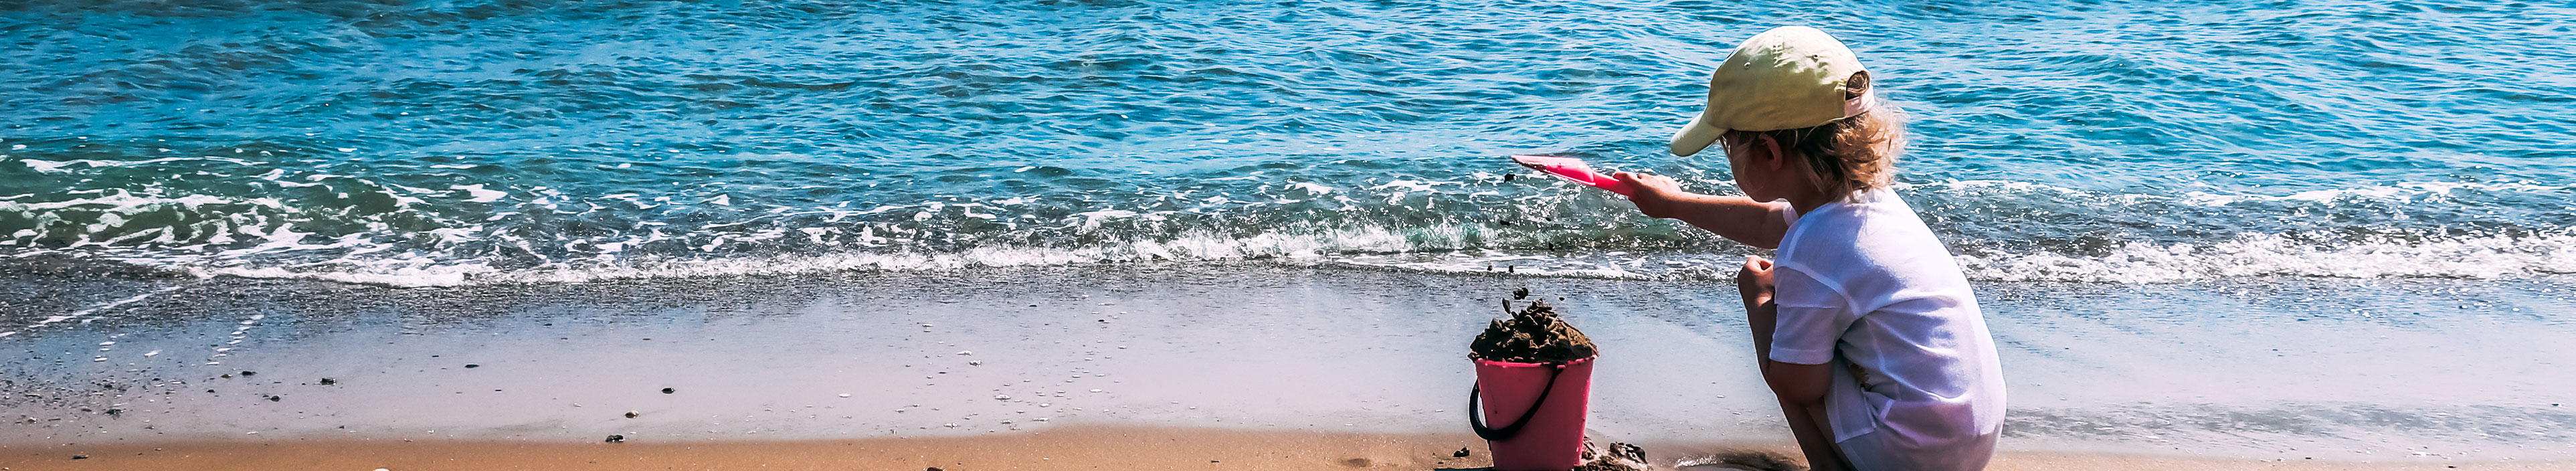 Ein Kind spielt mit einem rosa Plastikeimer und einer Schaufel im Sand an einem Strand in der Nähe des Meeres. Kreta, Griechenland.